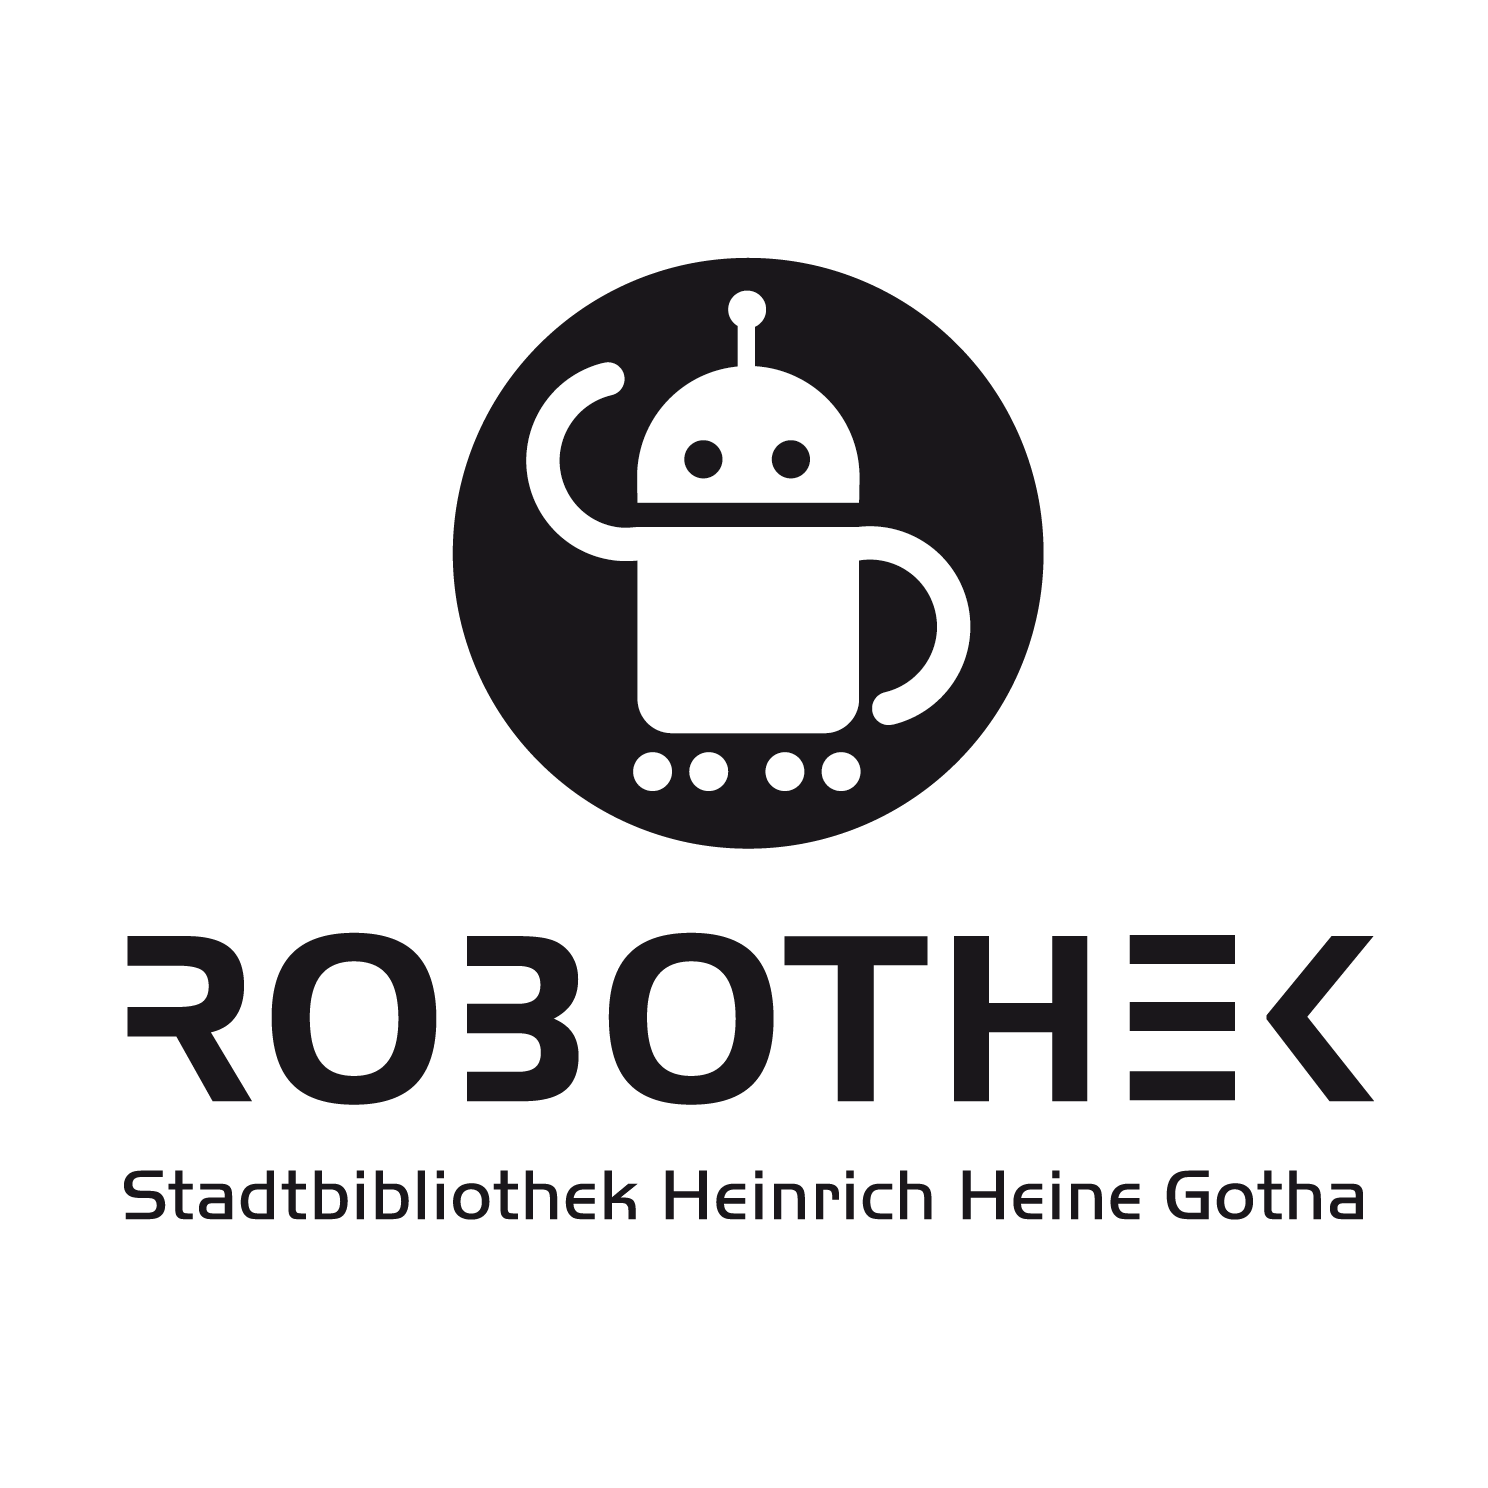 RoboThek & Schülerforschungszentrum Gotha